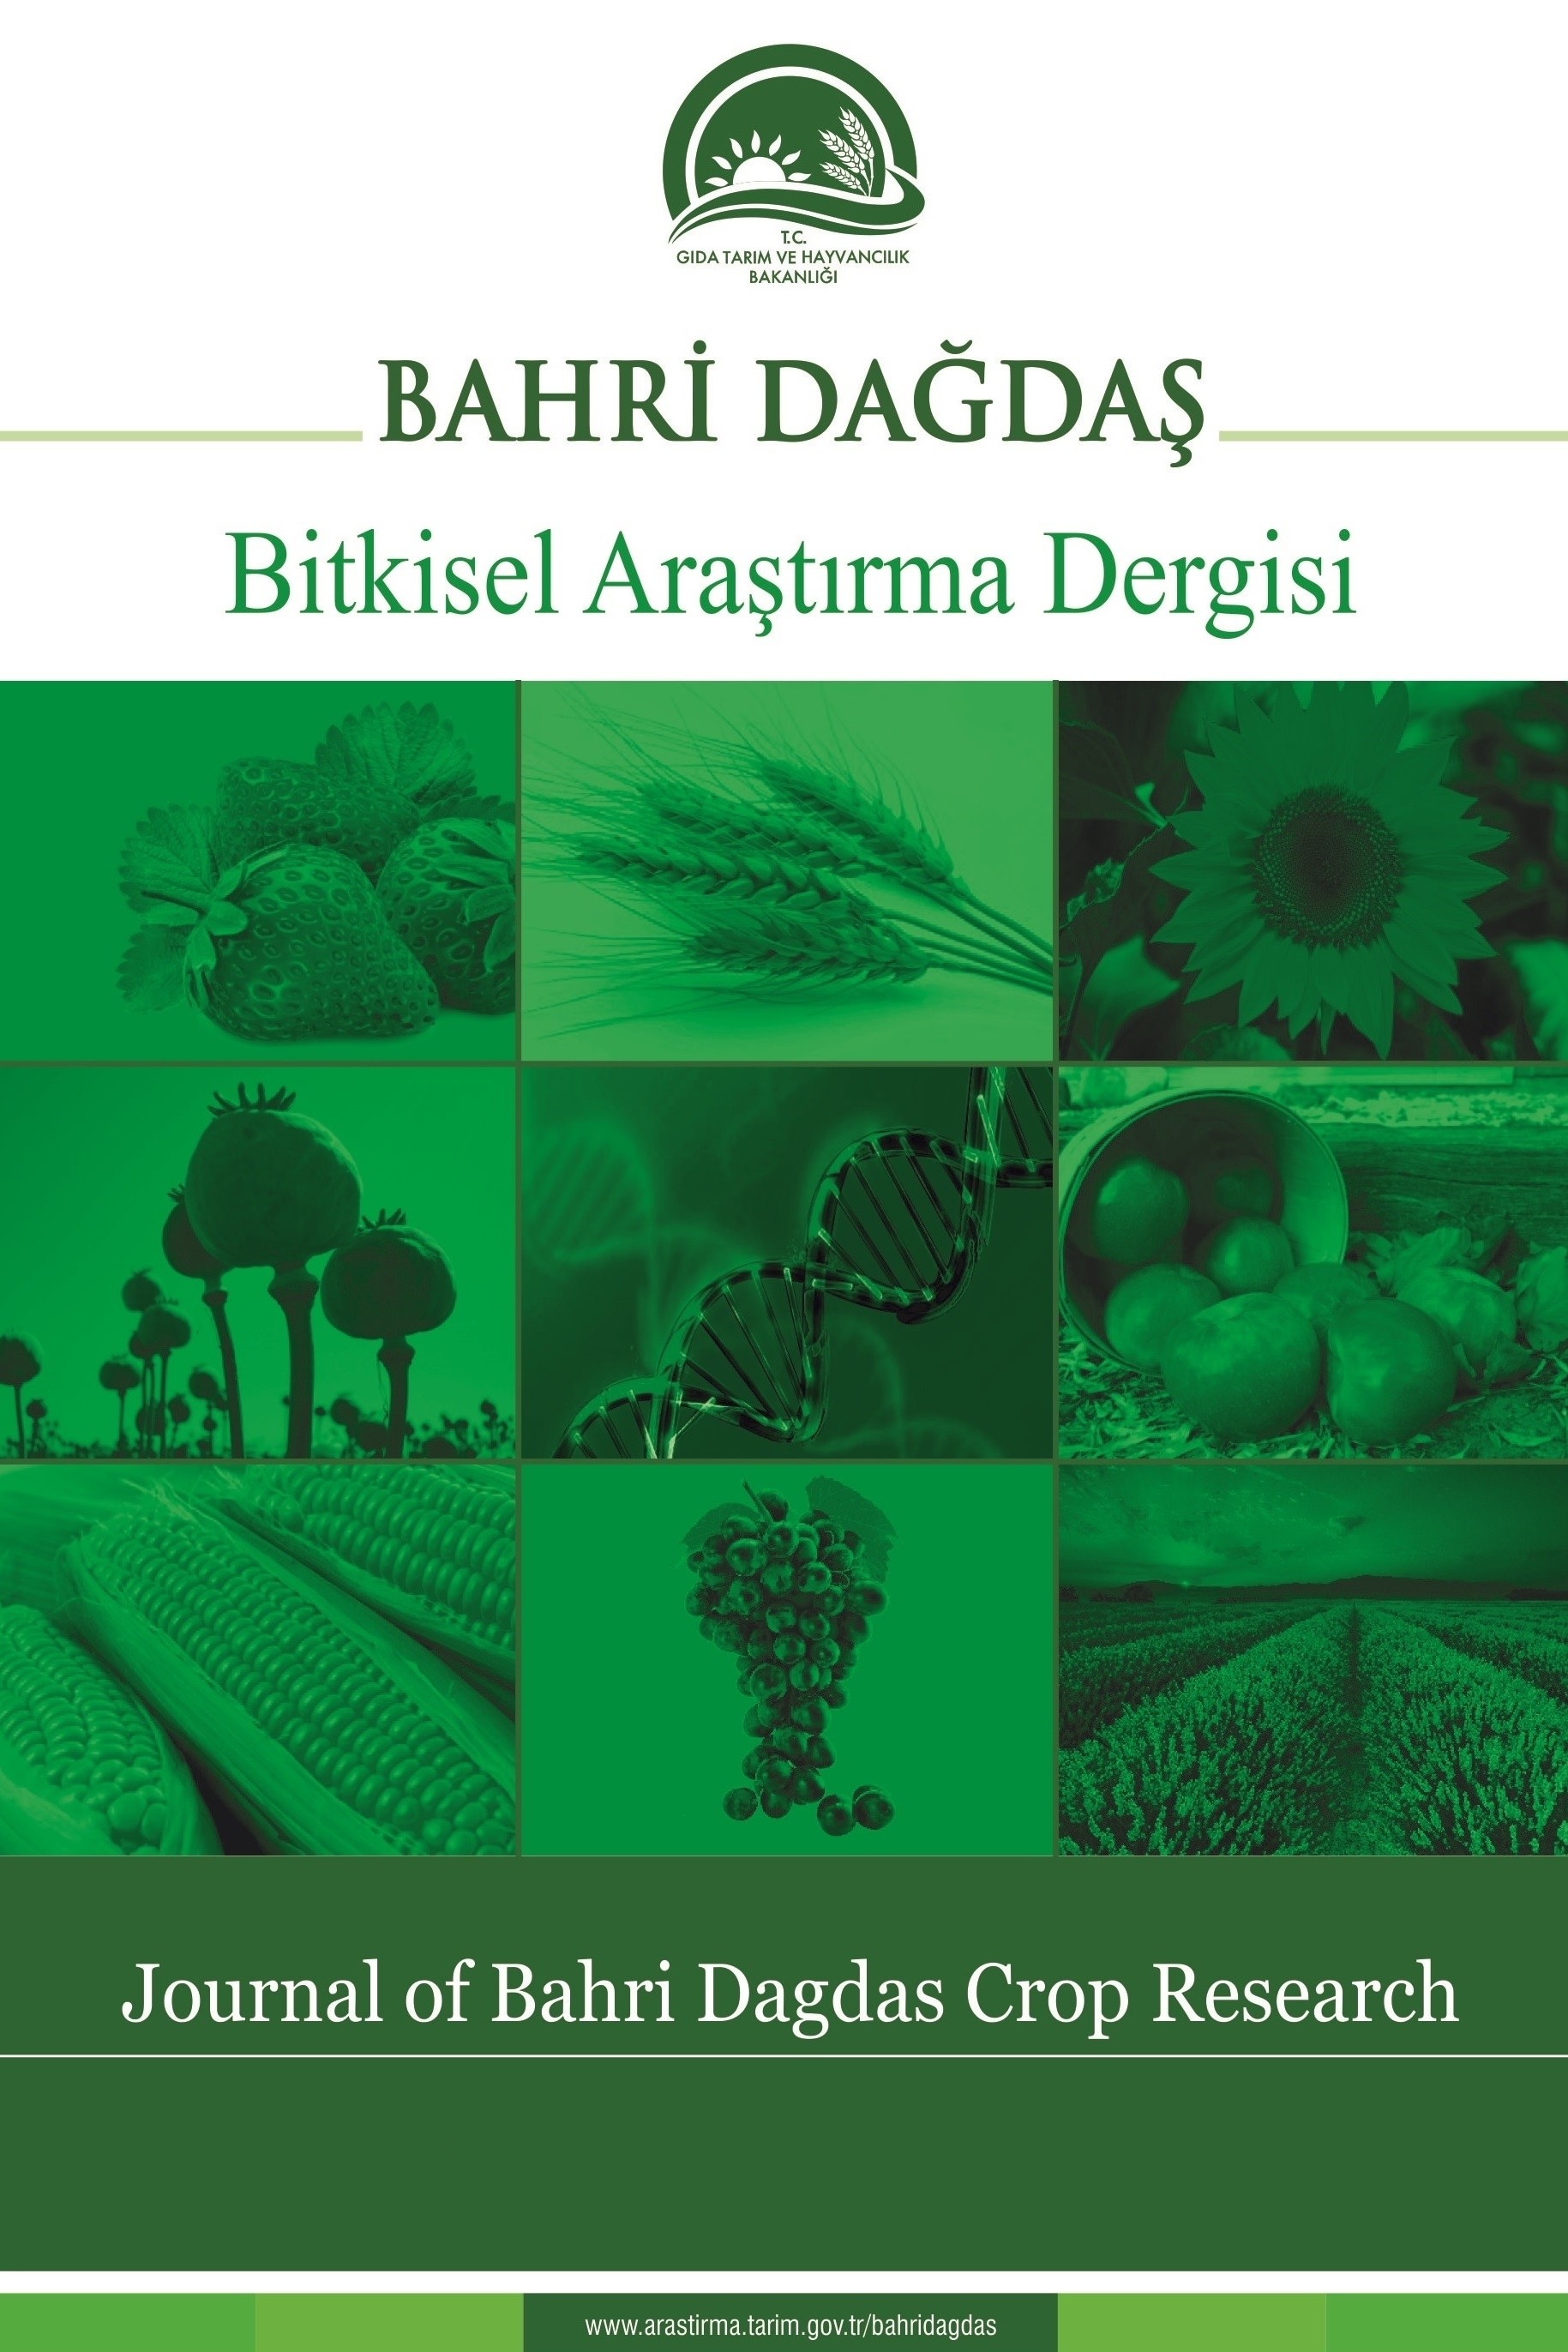 Journal of Bahri Dagdas Crop Research